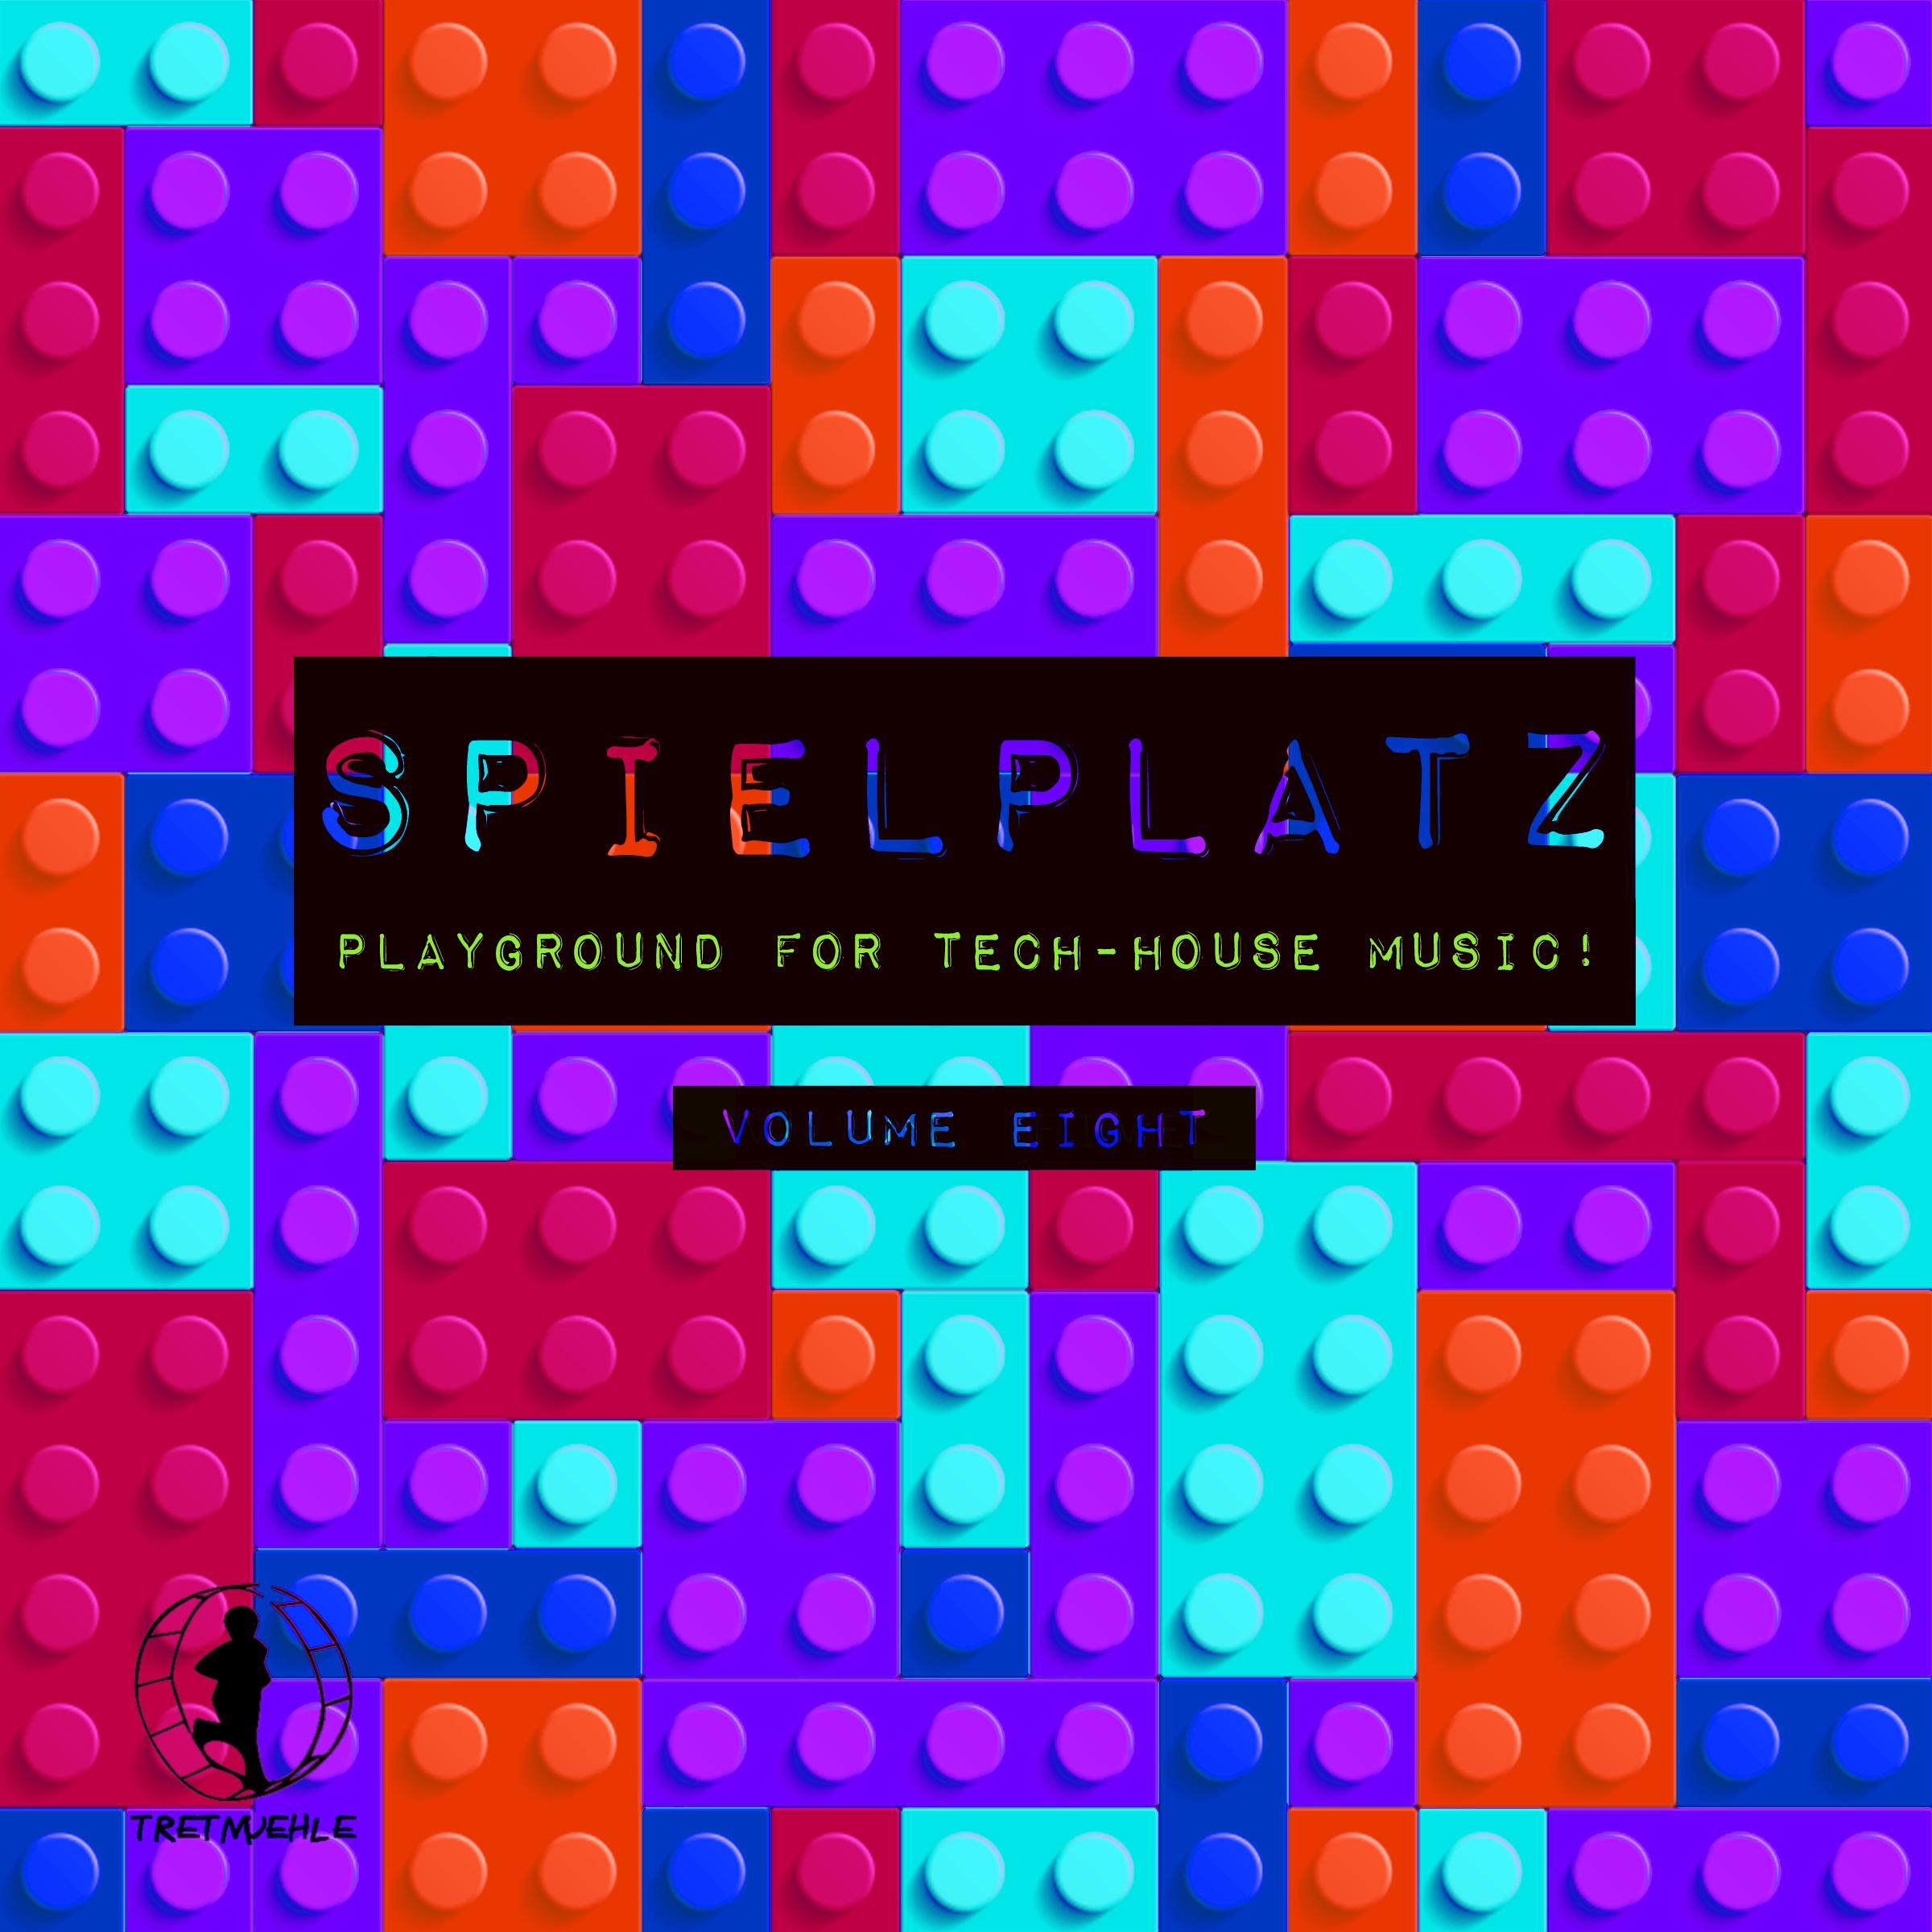 Spielplatz, Vol. 8 - Playground for Tech-House Music